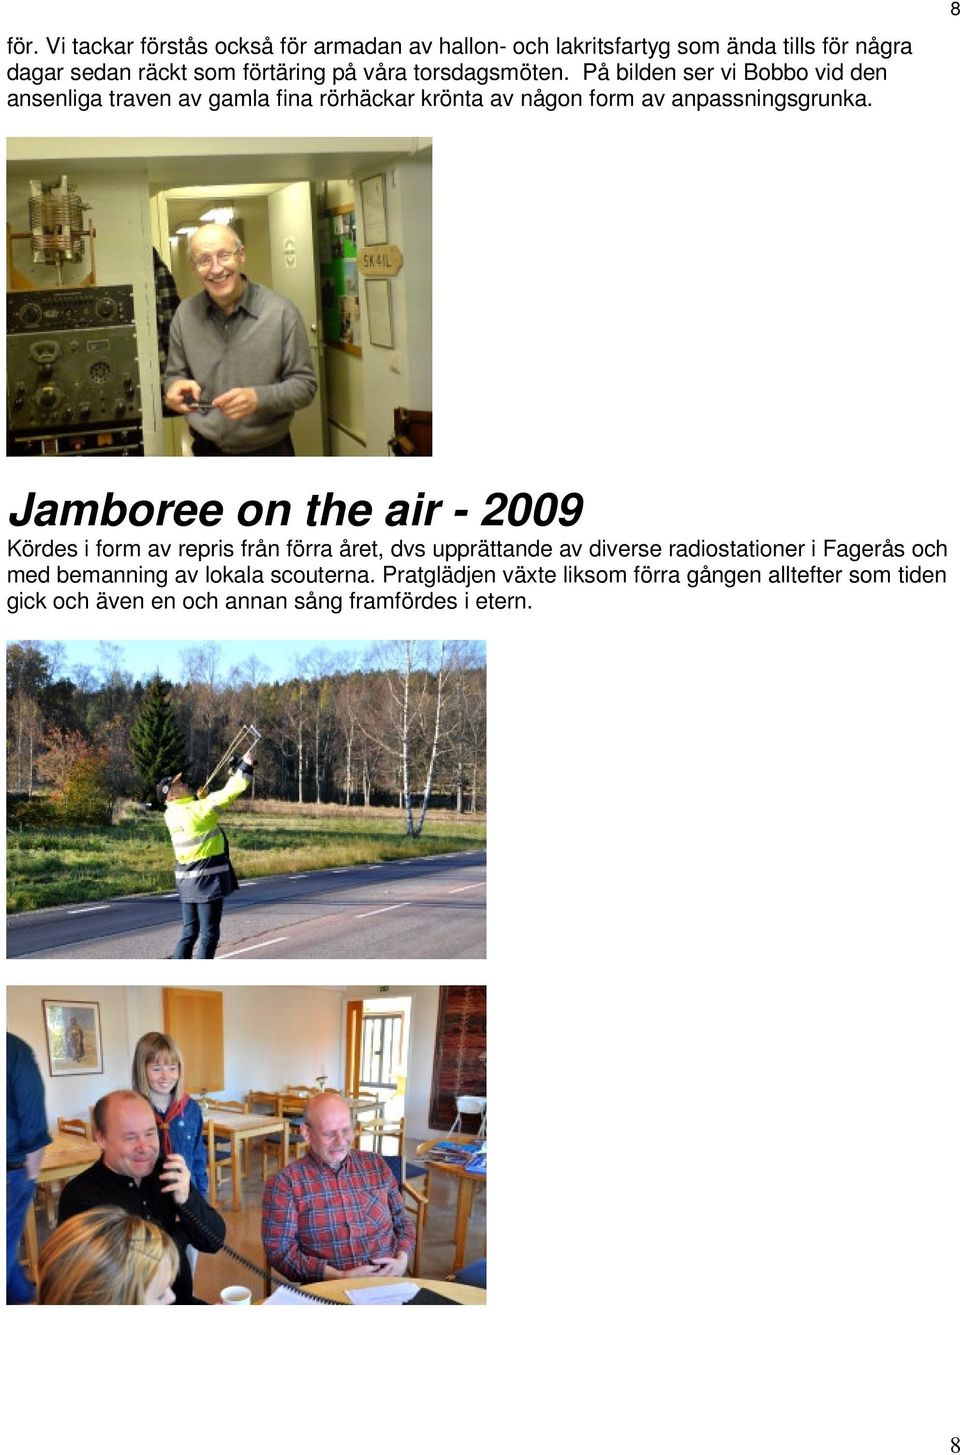 8 Jamboree on the air - 2009 Kördes i form av repris från förra året, dvs upprättande av diverse radiostationer i Fagerås och med